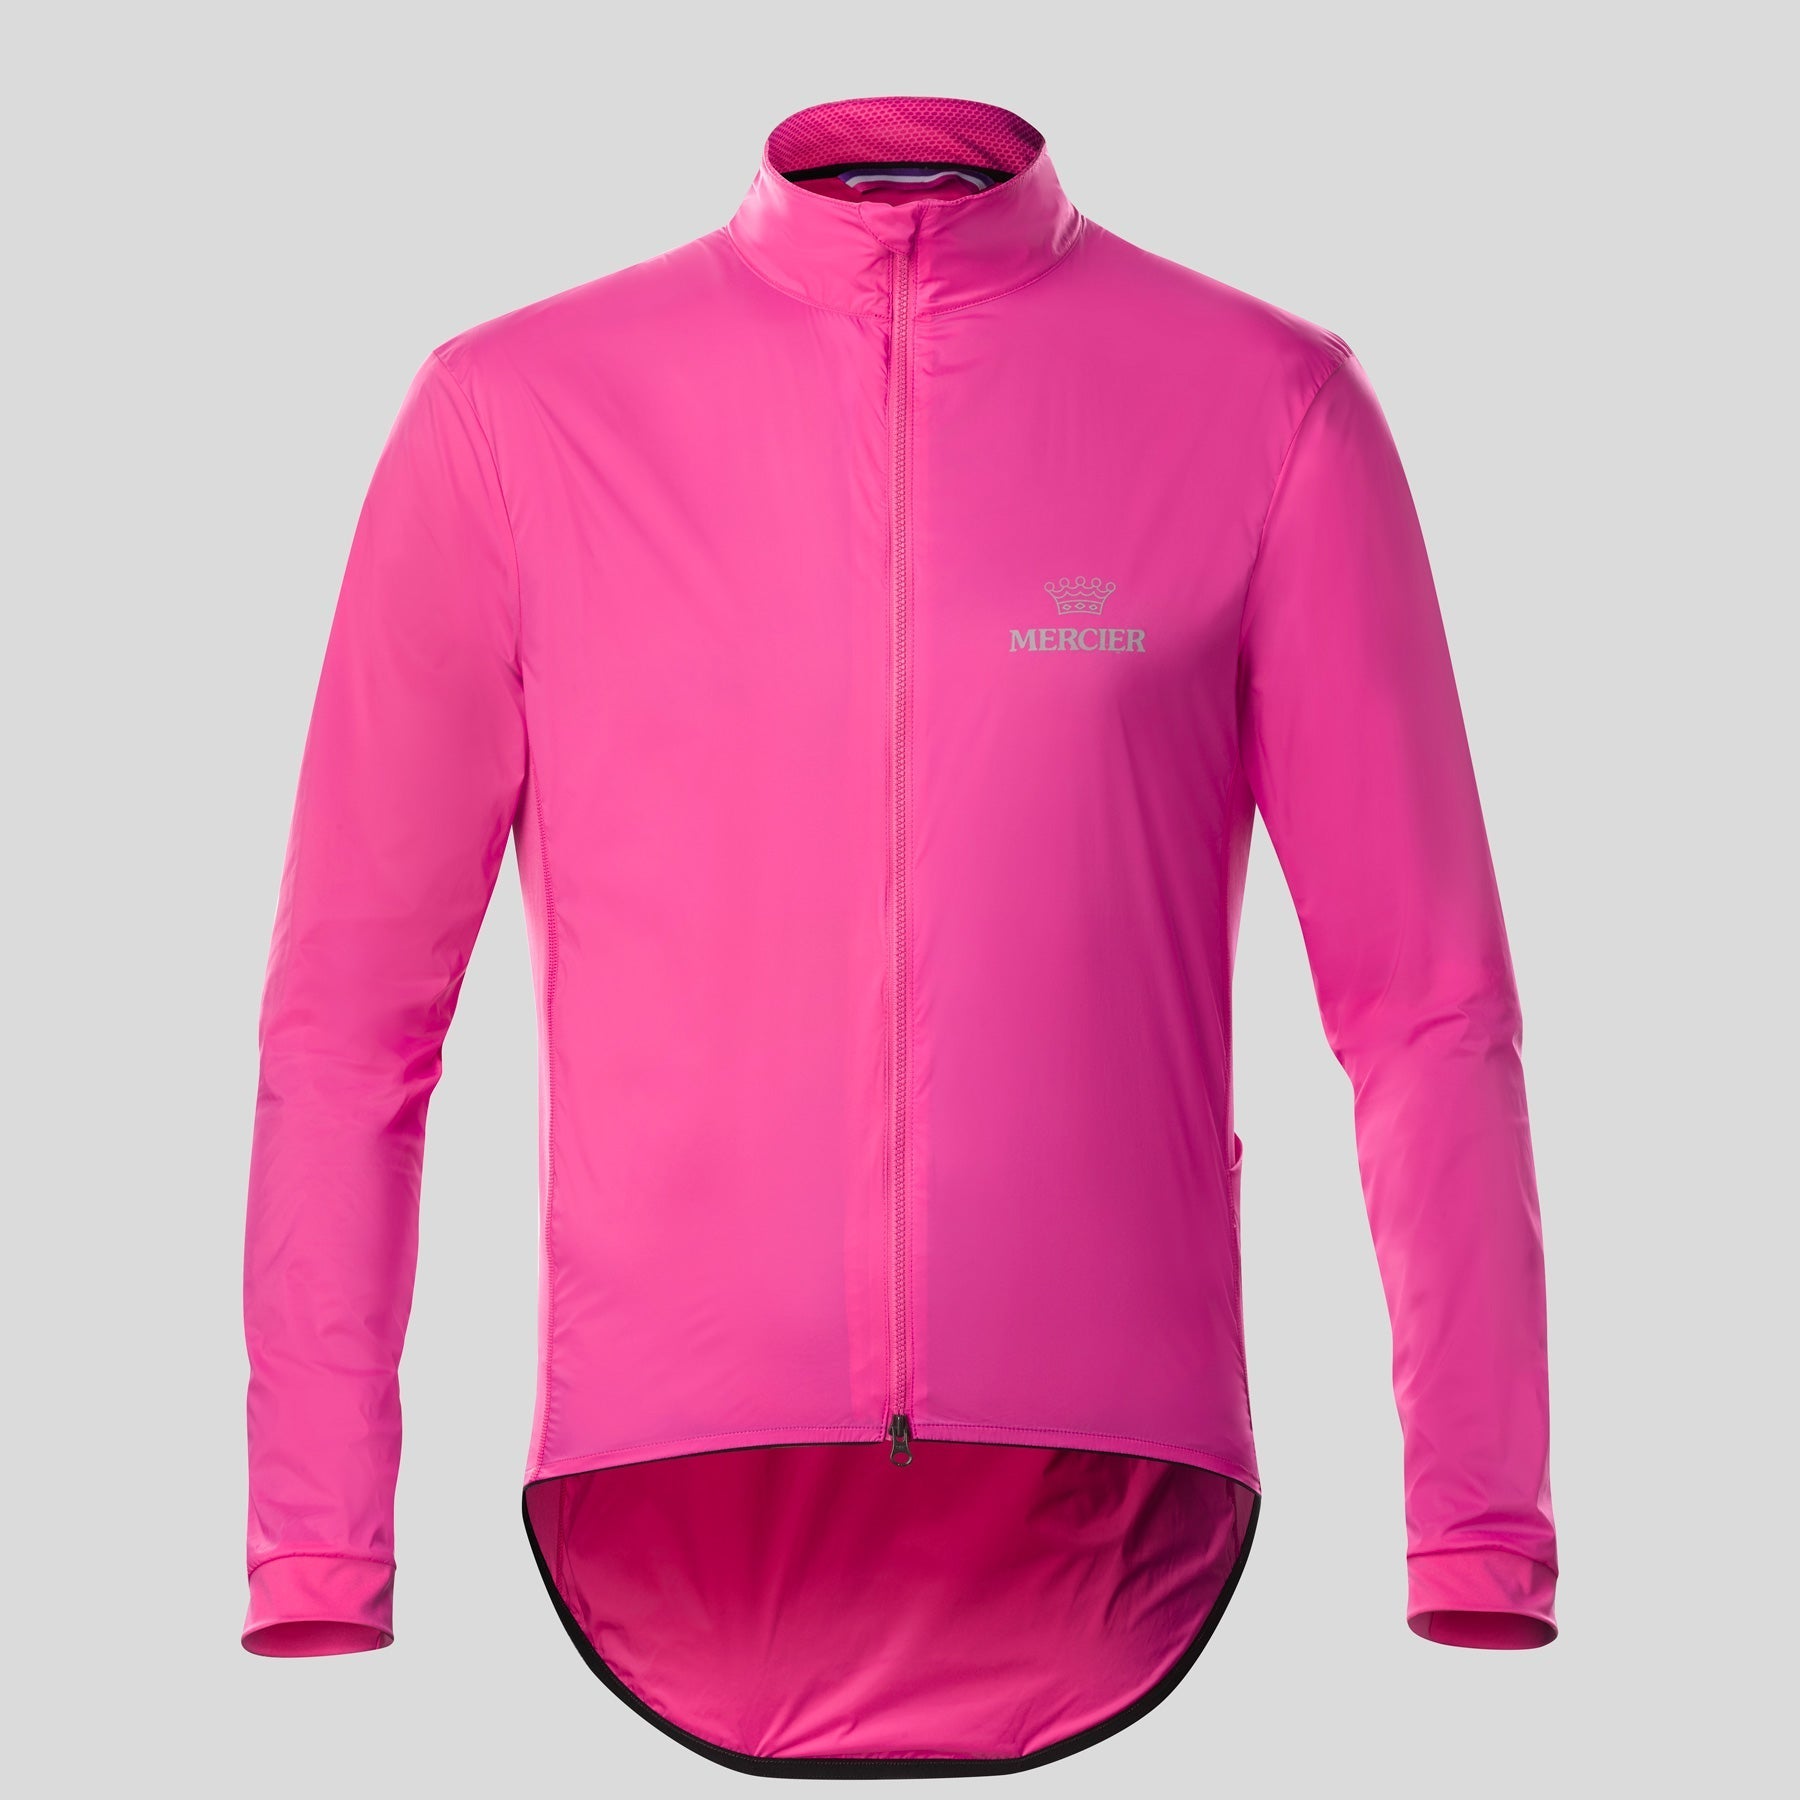 Mercier - Jacket Rafale Coats Mercier S Pink 